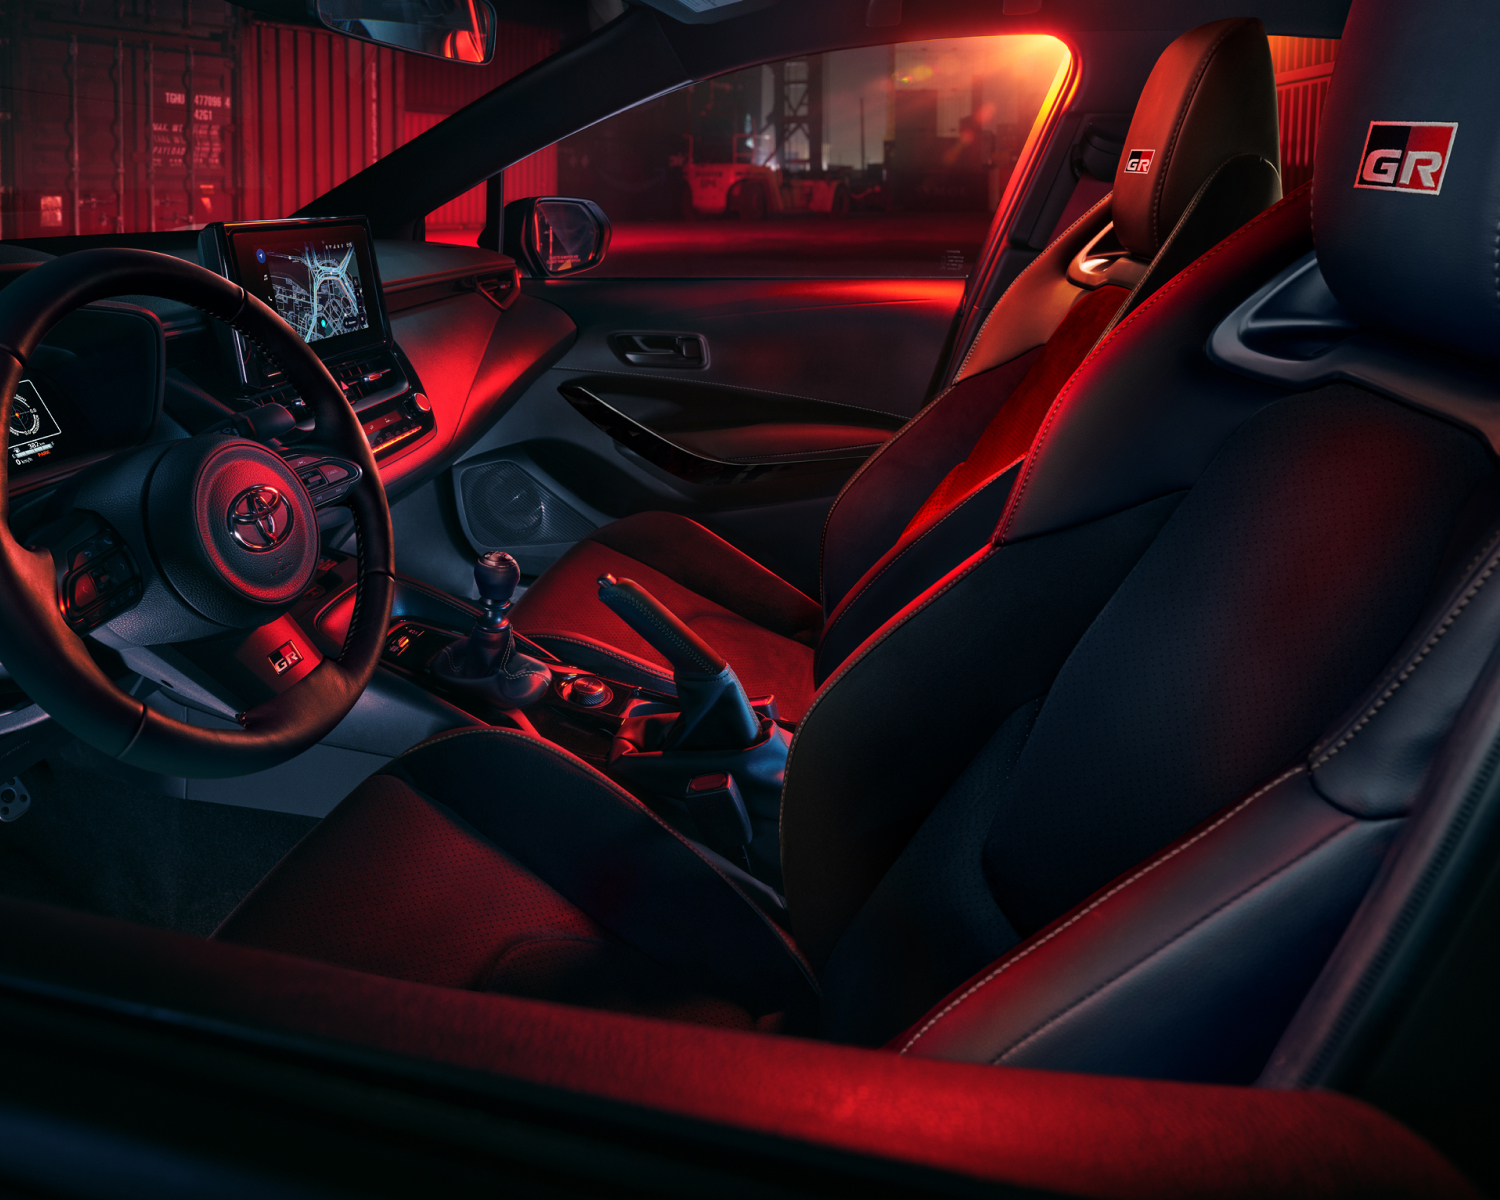 GR Corolla Core interior shown in Black